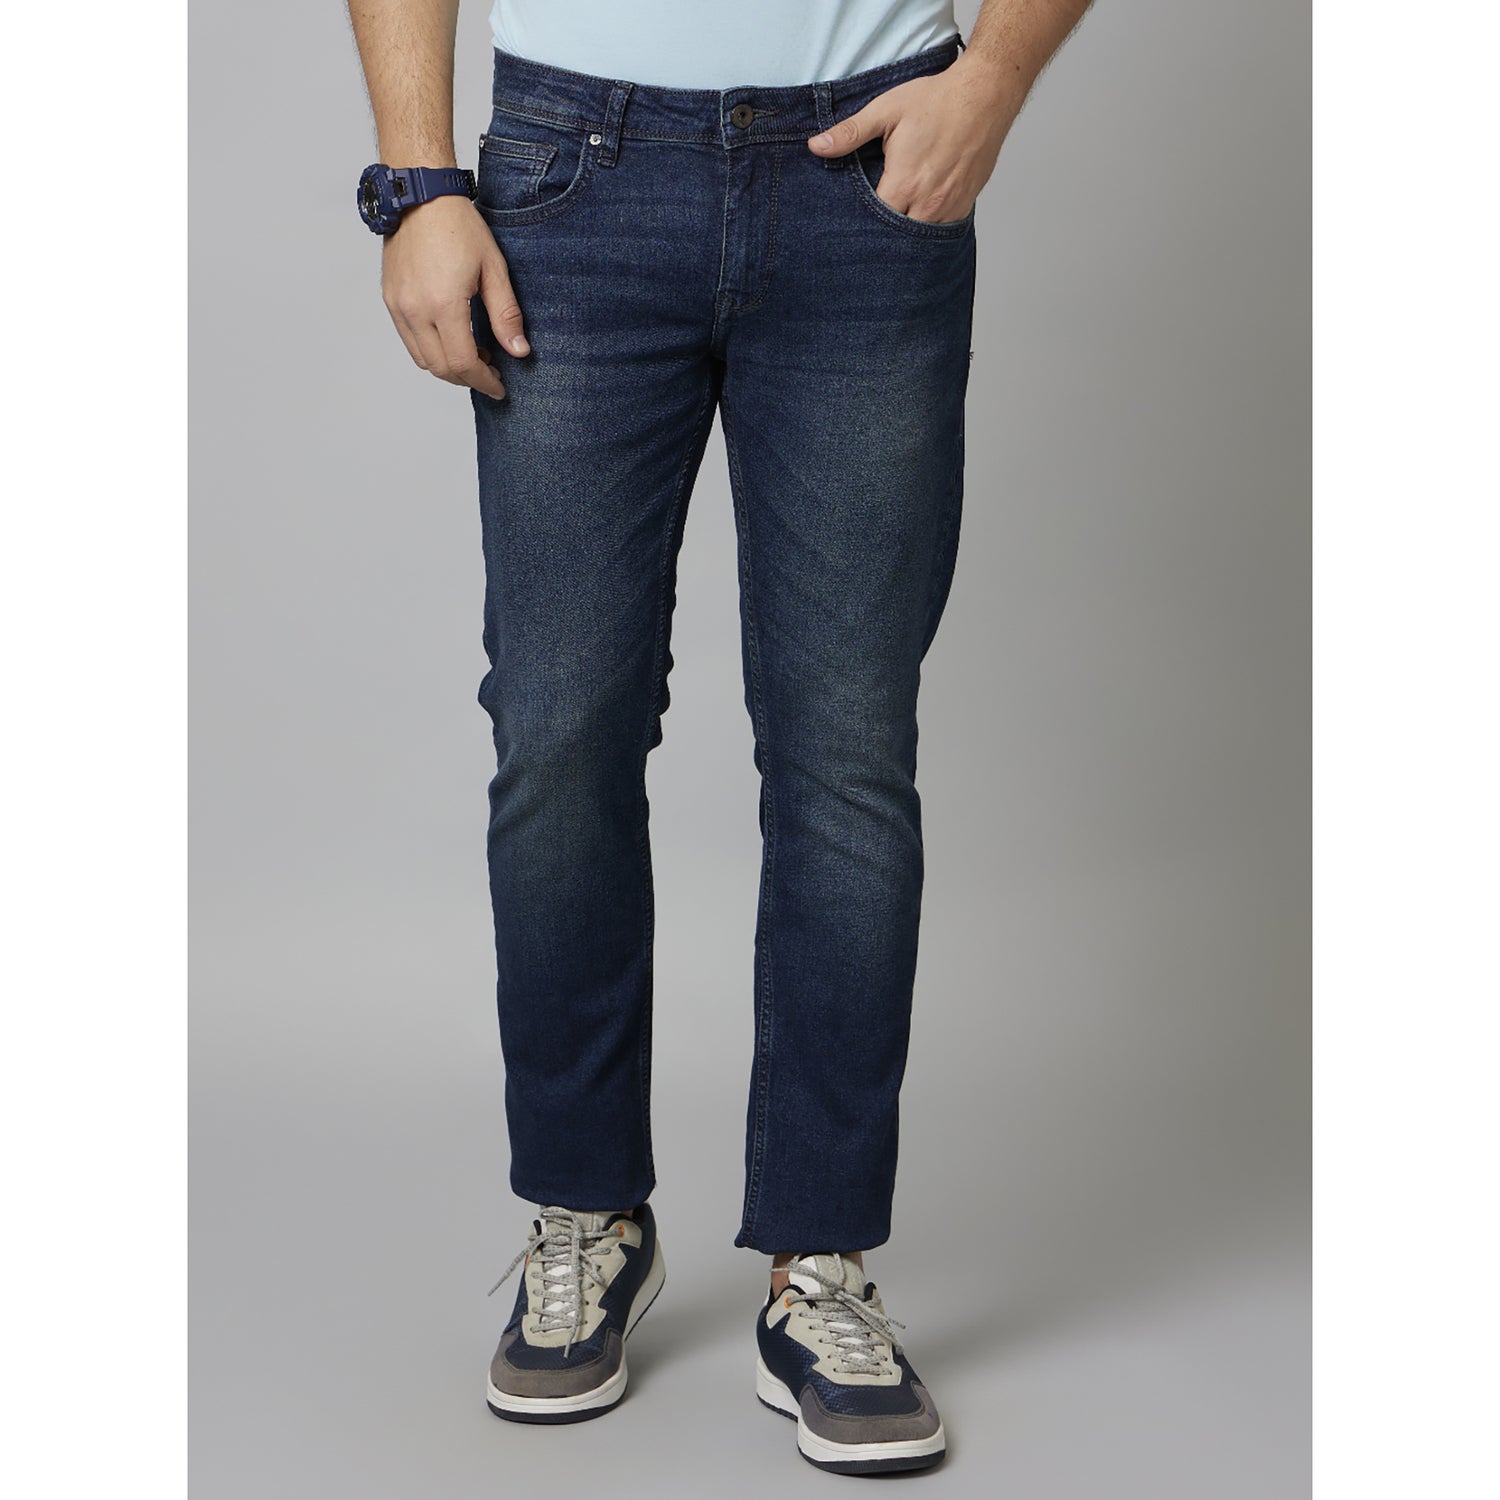 Blue Solid Cotton Jeans (COECOBEN125)